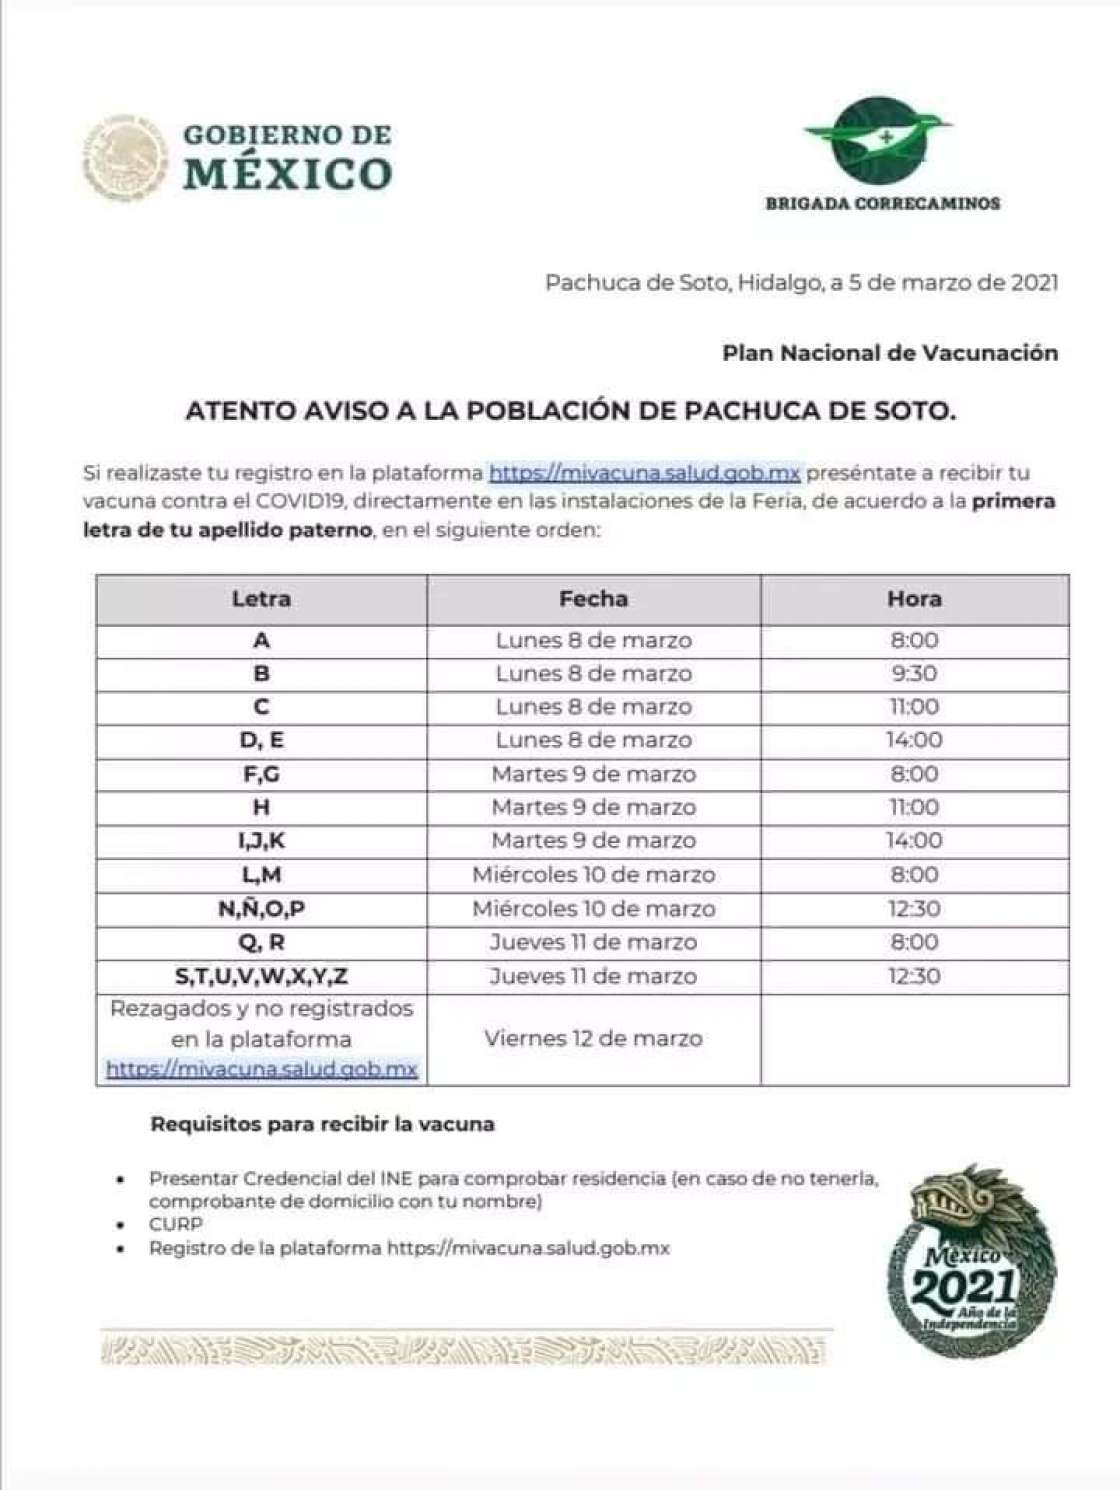 Confusión en inicio de entrega de turnos de vacuna en Pachuca